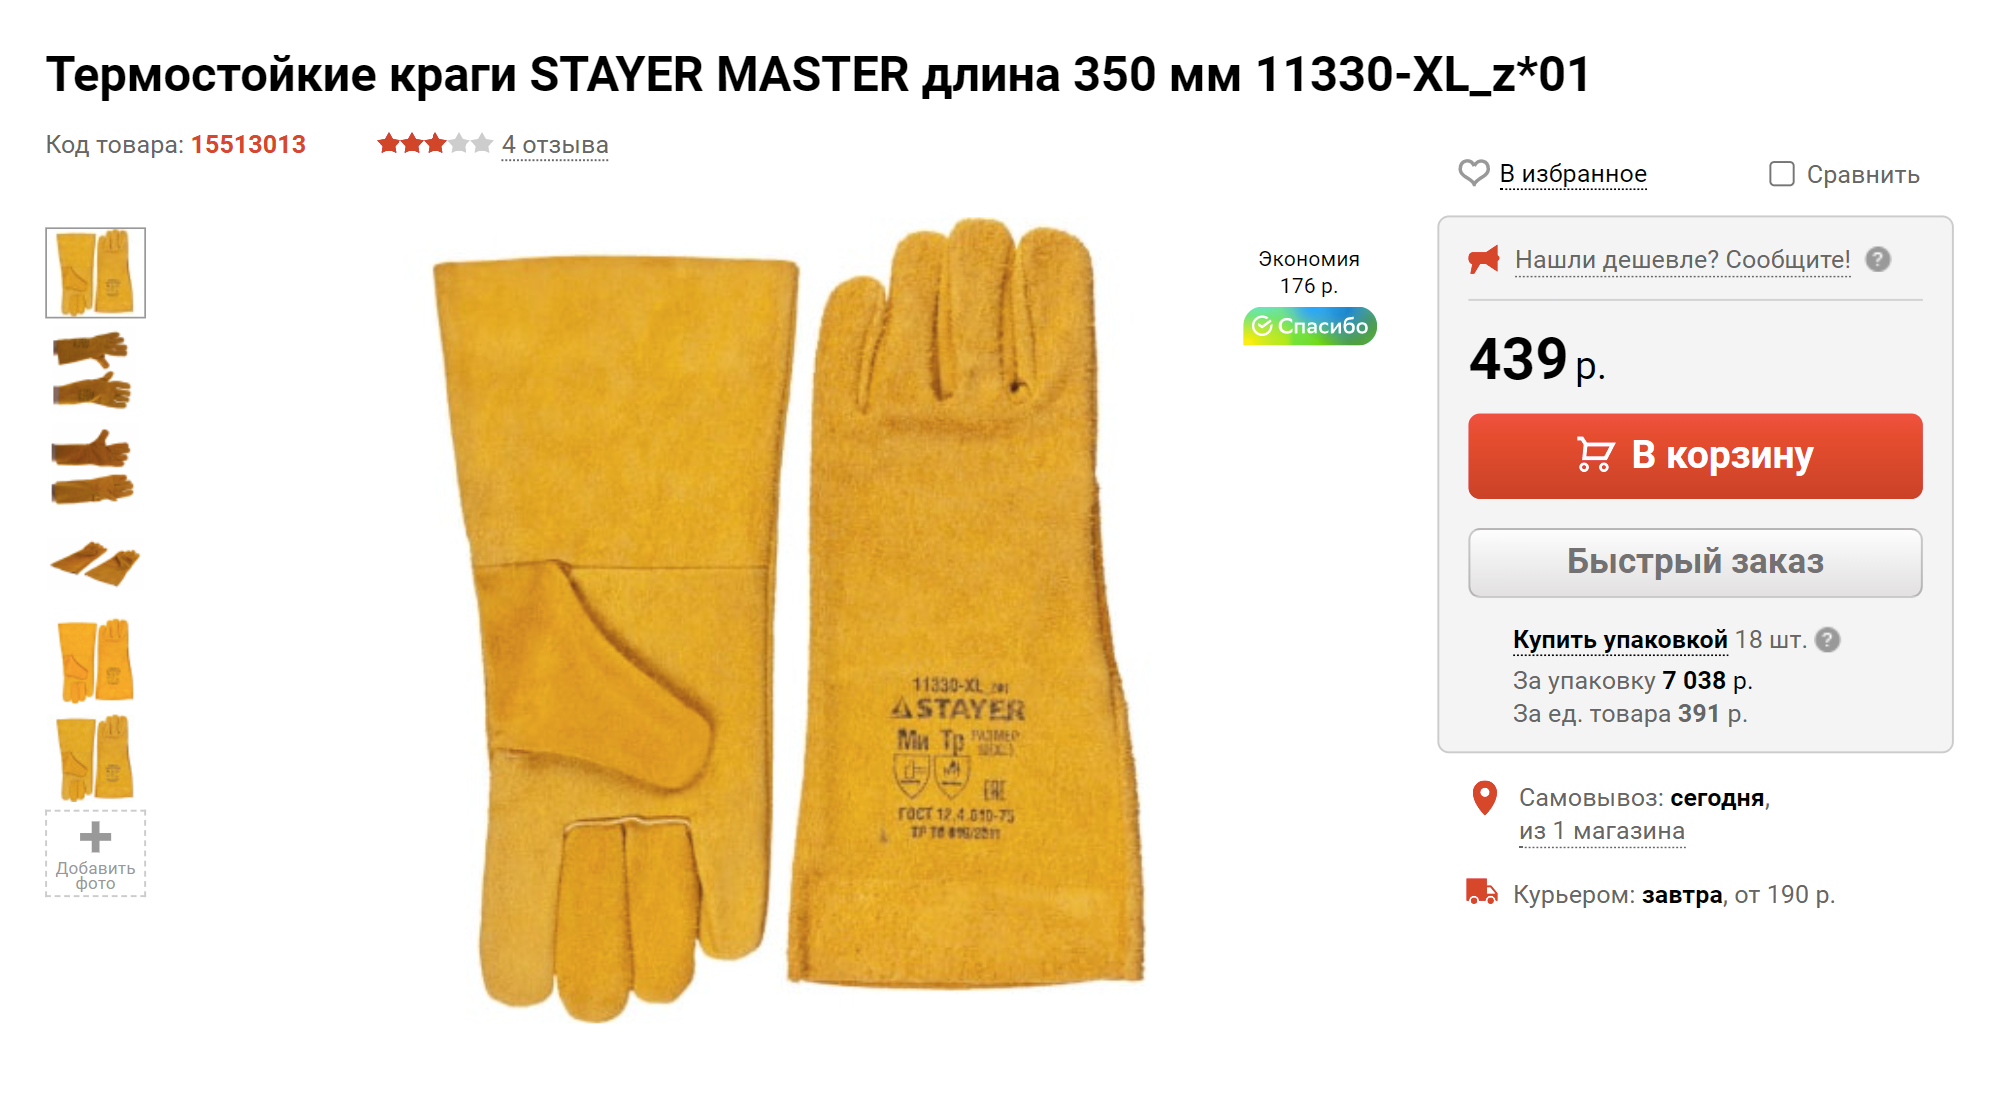 Можно взять перчатки и в строительном магазине. Но я не уверена, что они долго выдержат +300 °C. Одно дело — искра, другое — хватать раскаленный казан